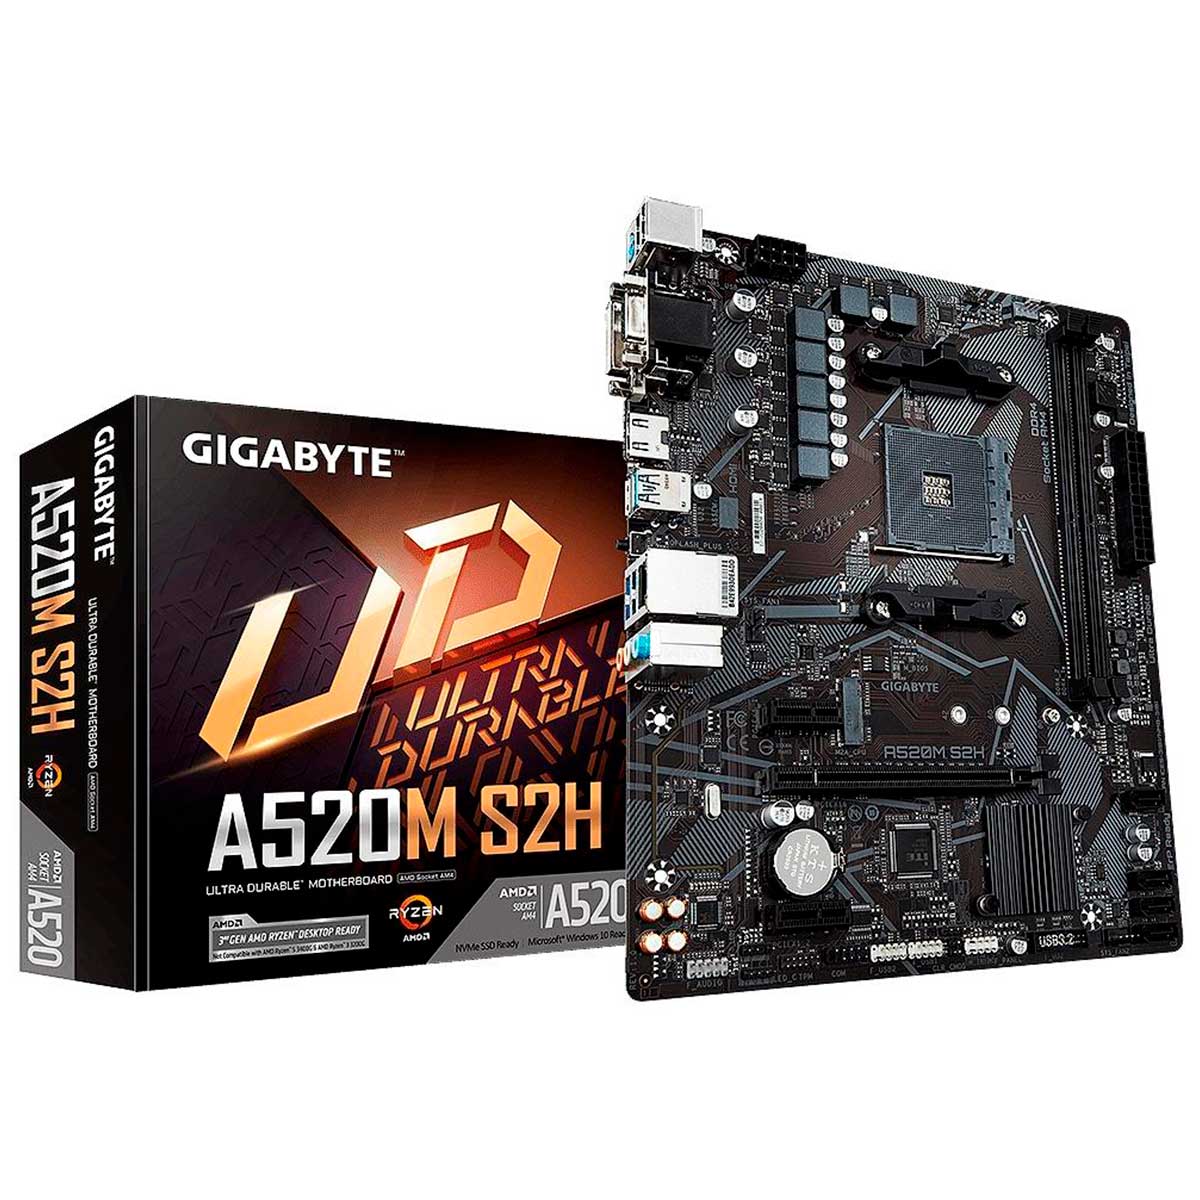 Gigabyte A520M S2H (AM4 - DDR4 5100 O.C) - Chipset AMD A520 - USB 3.2 - Slot M.2